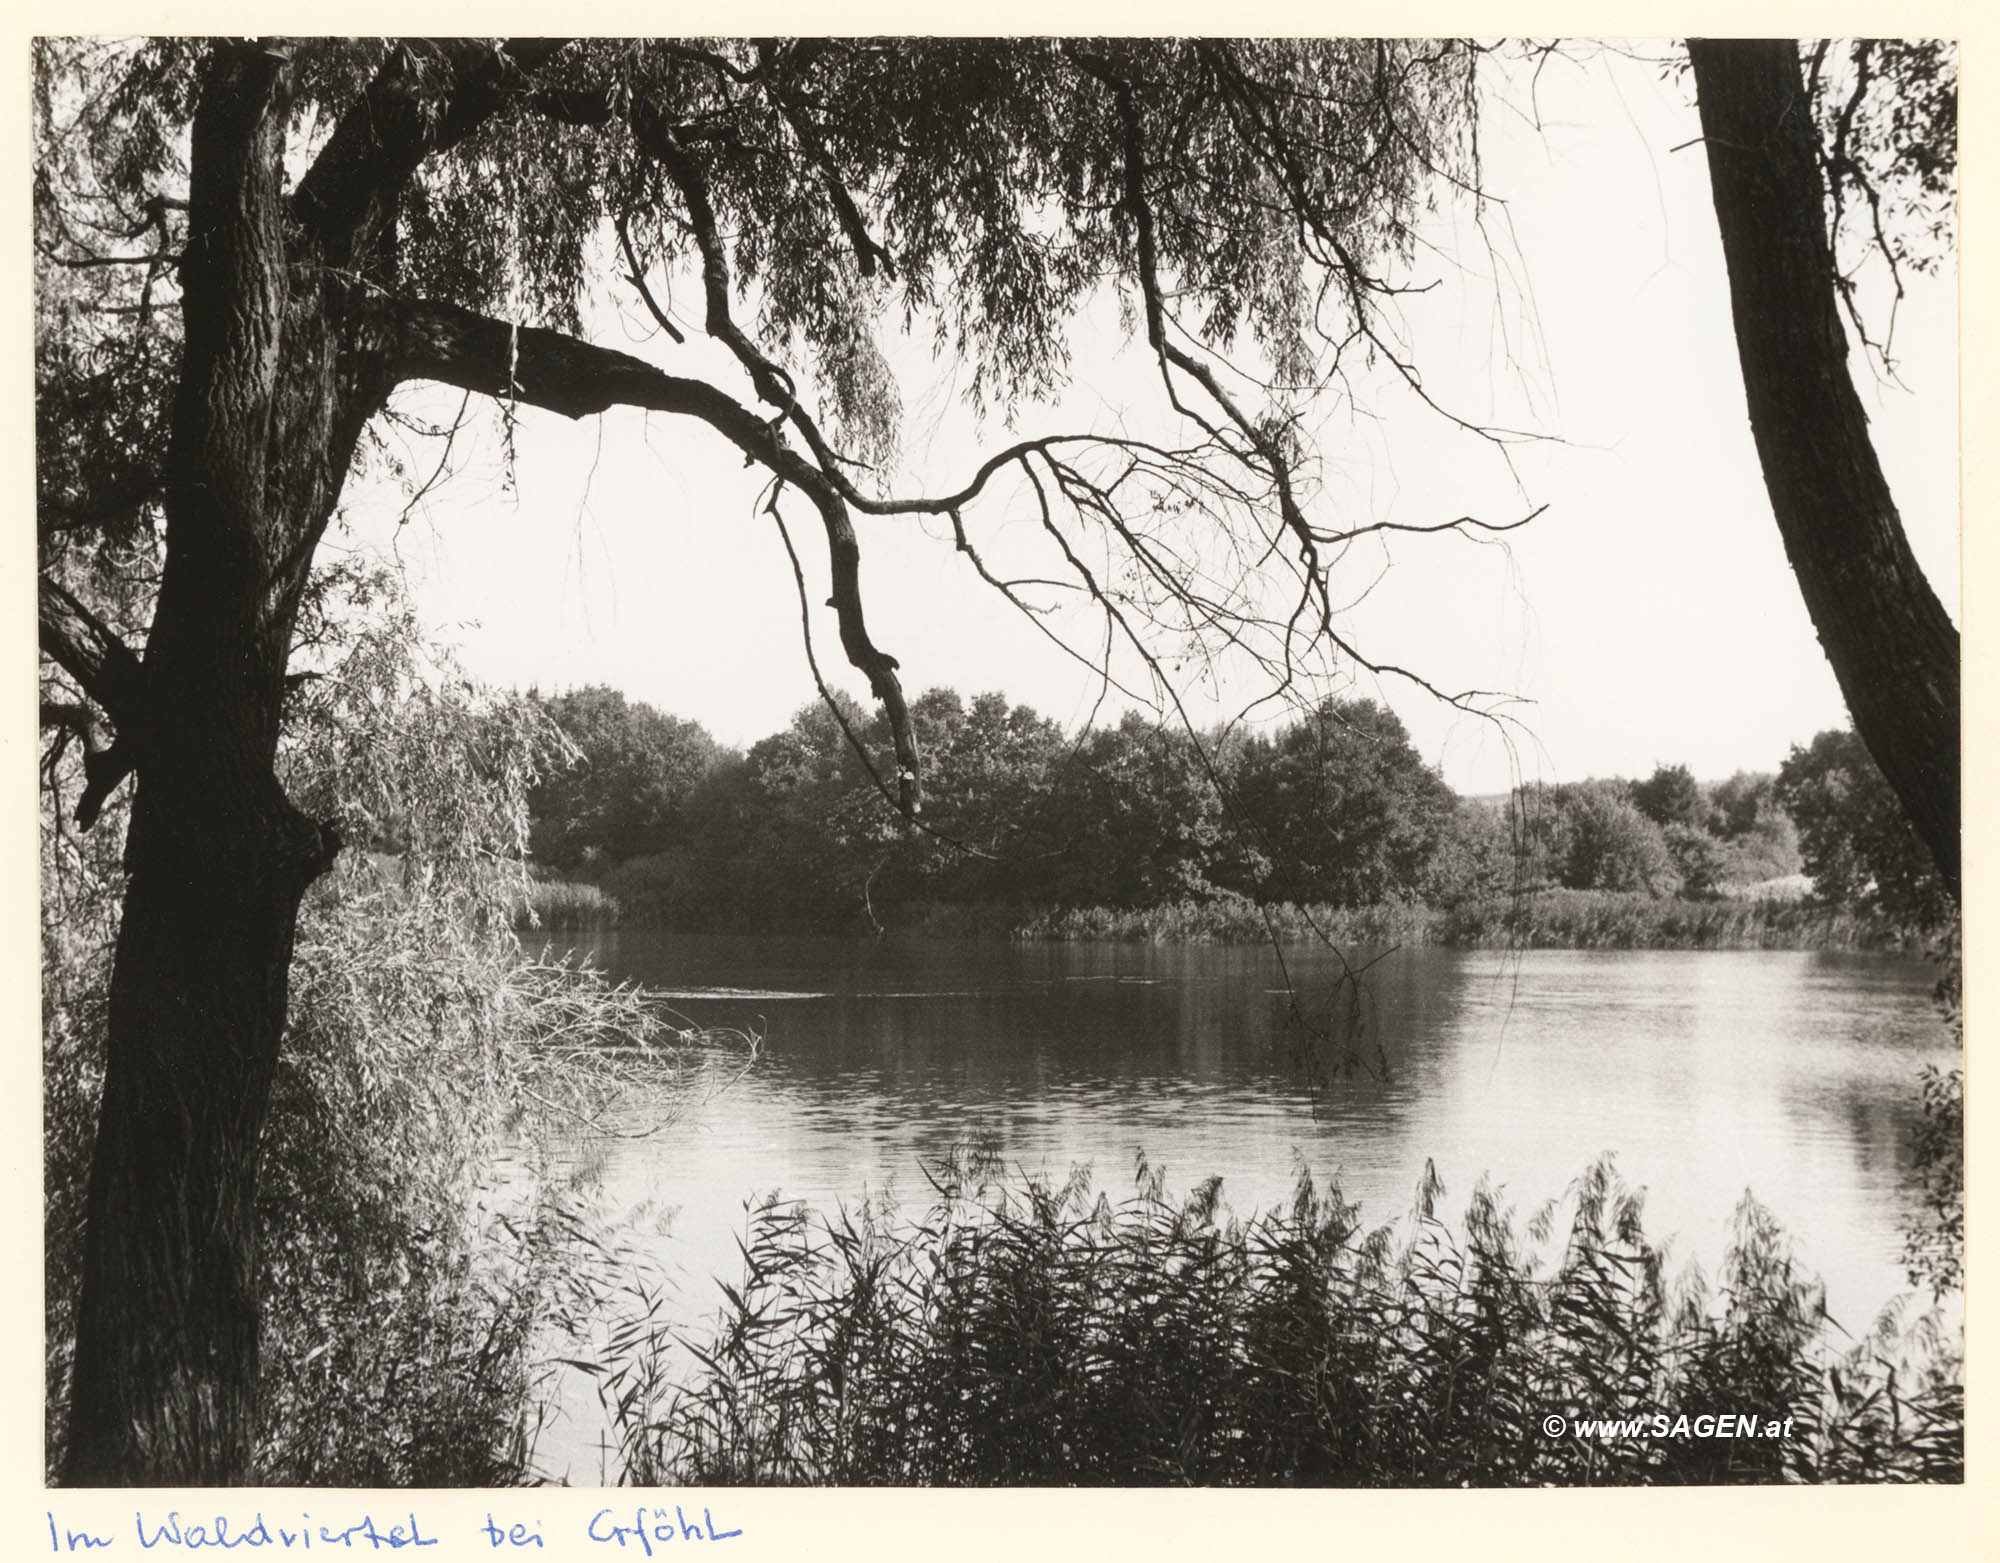 Teich im Waldviertel bei Gföhl im Sommer 1958